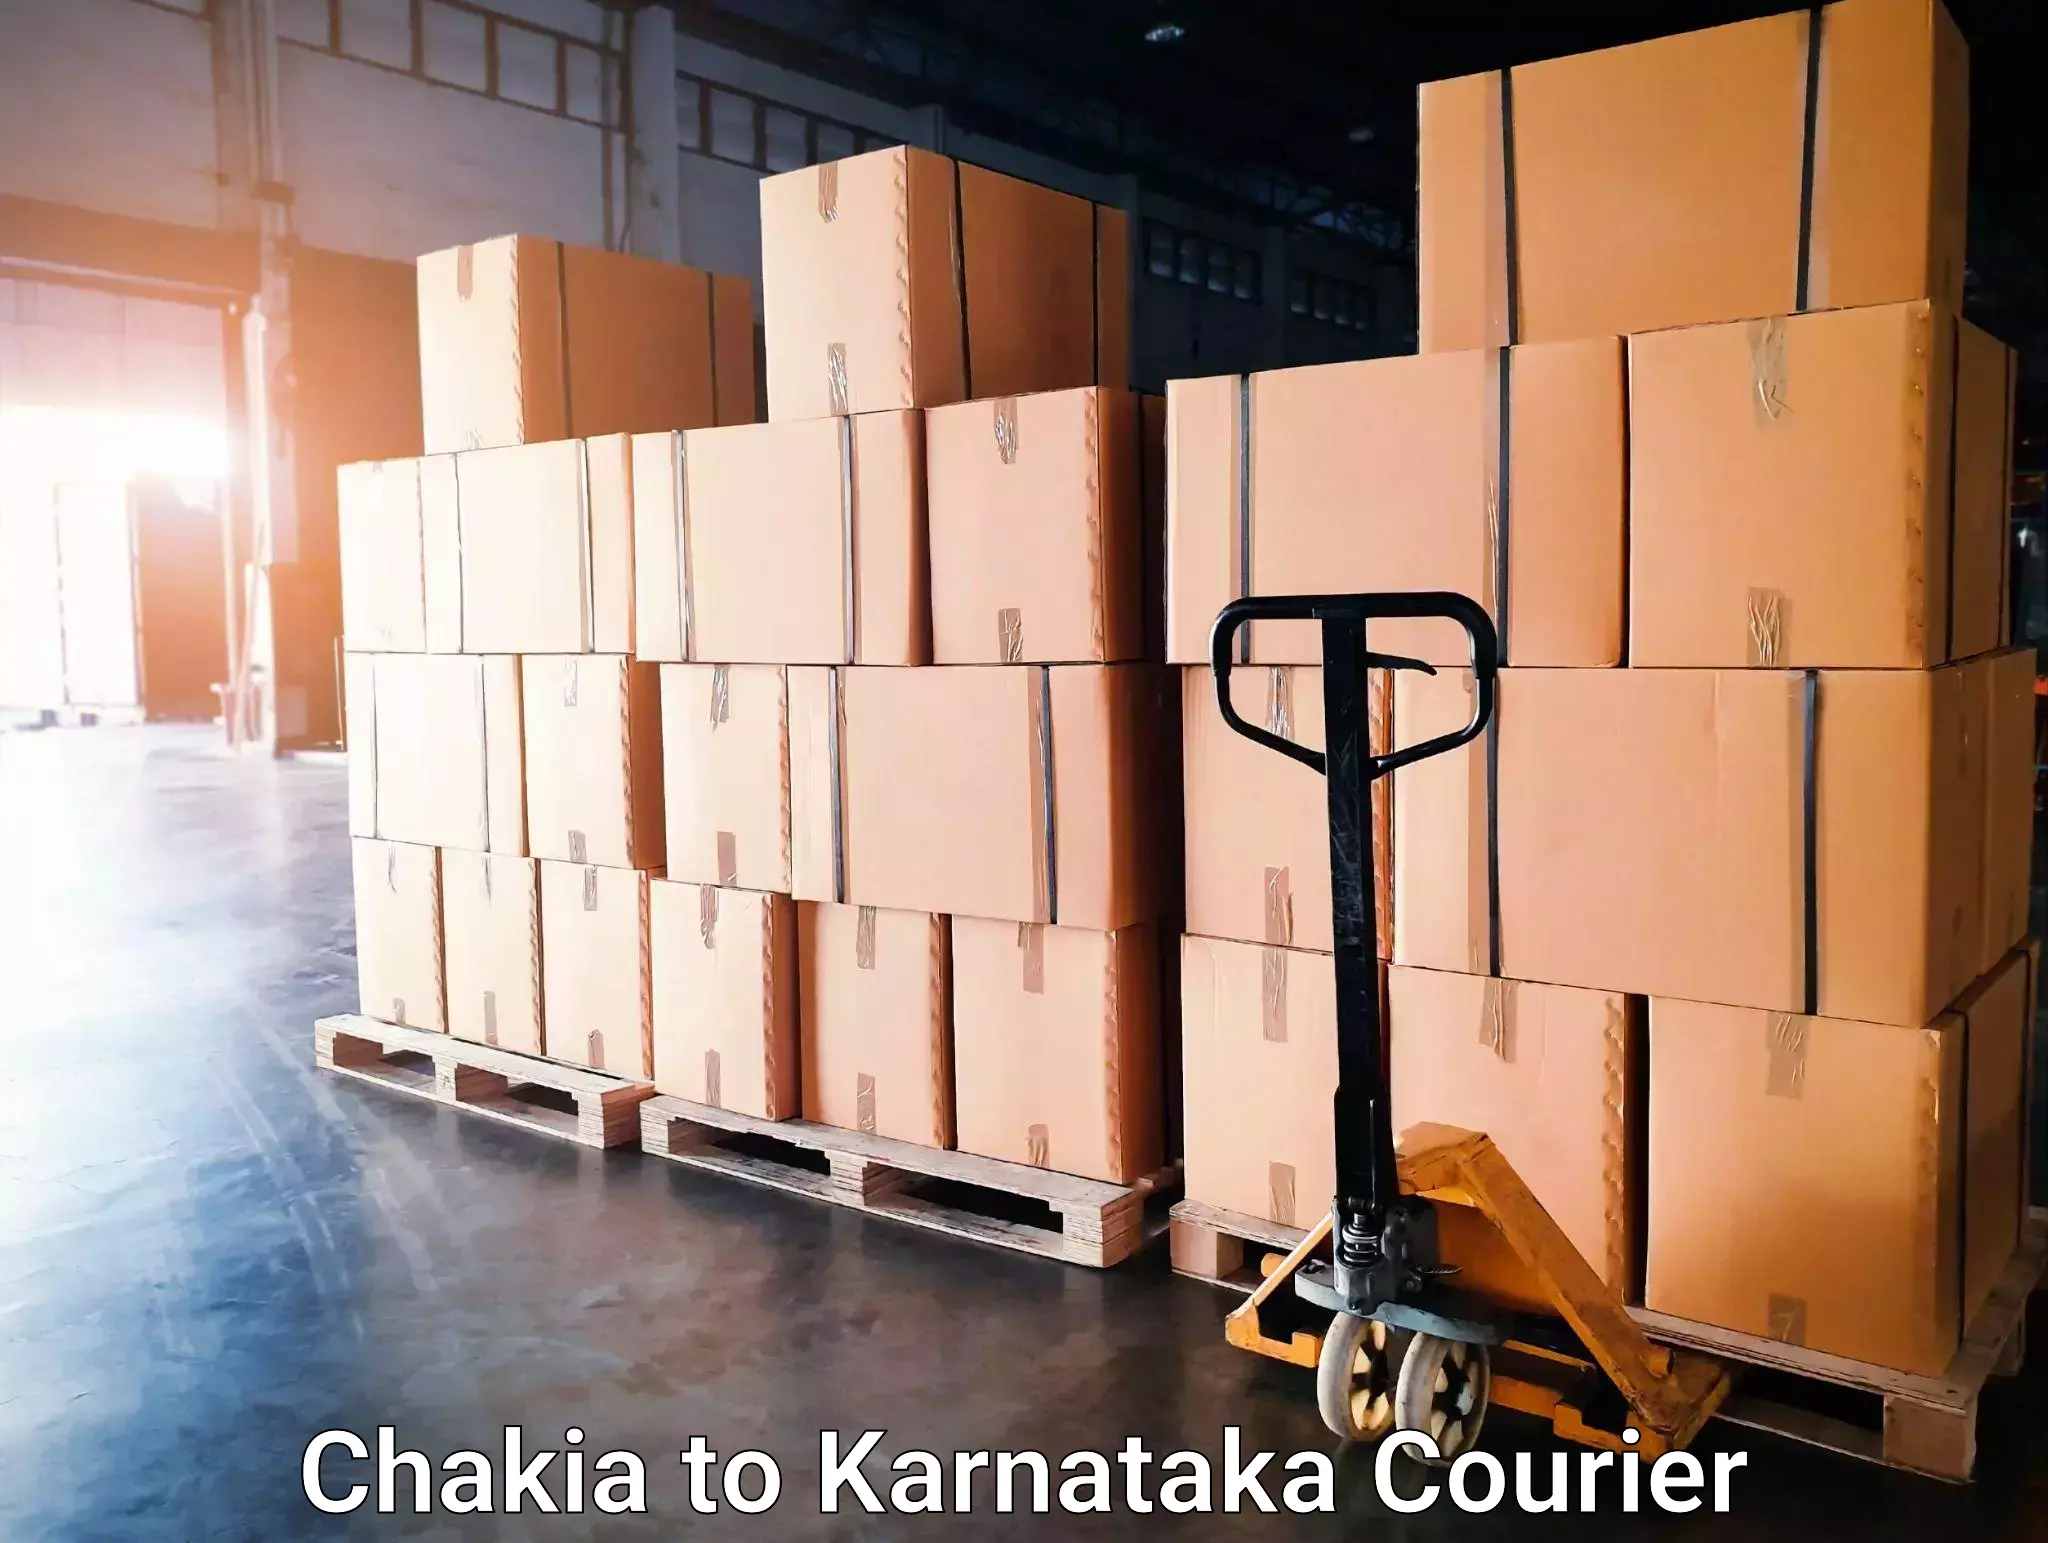 Efficient moving company Chakia to Sringeri